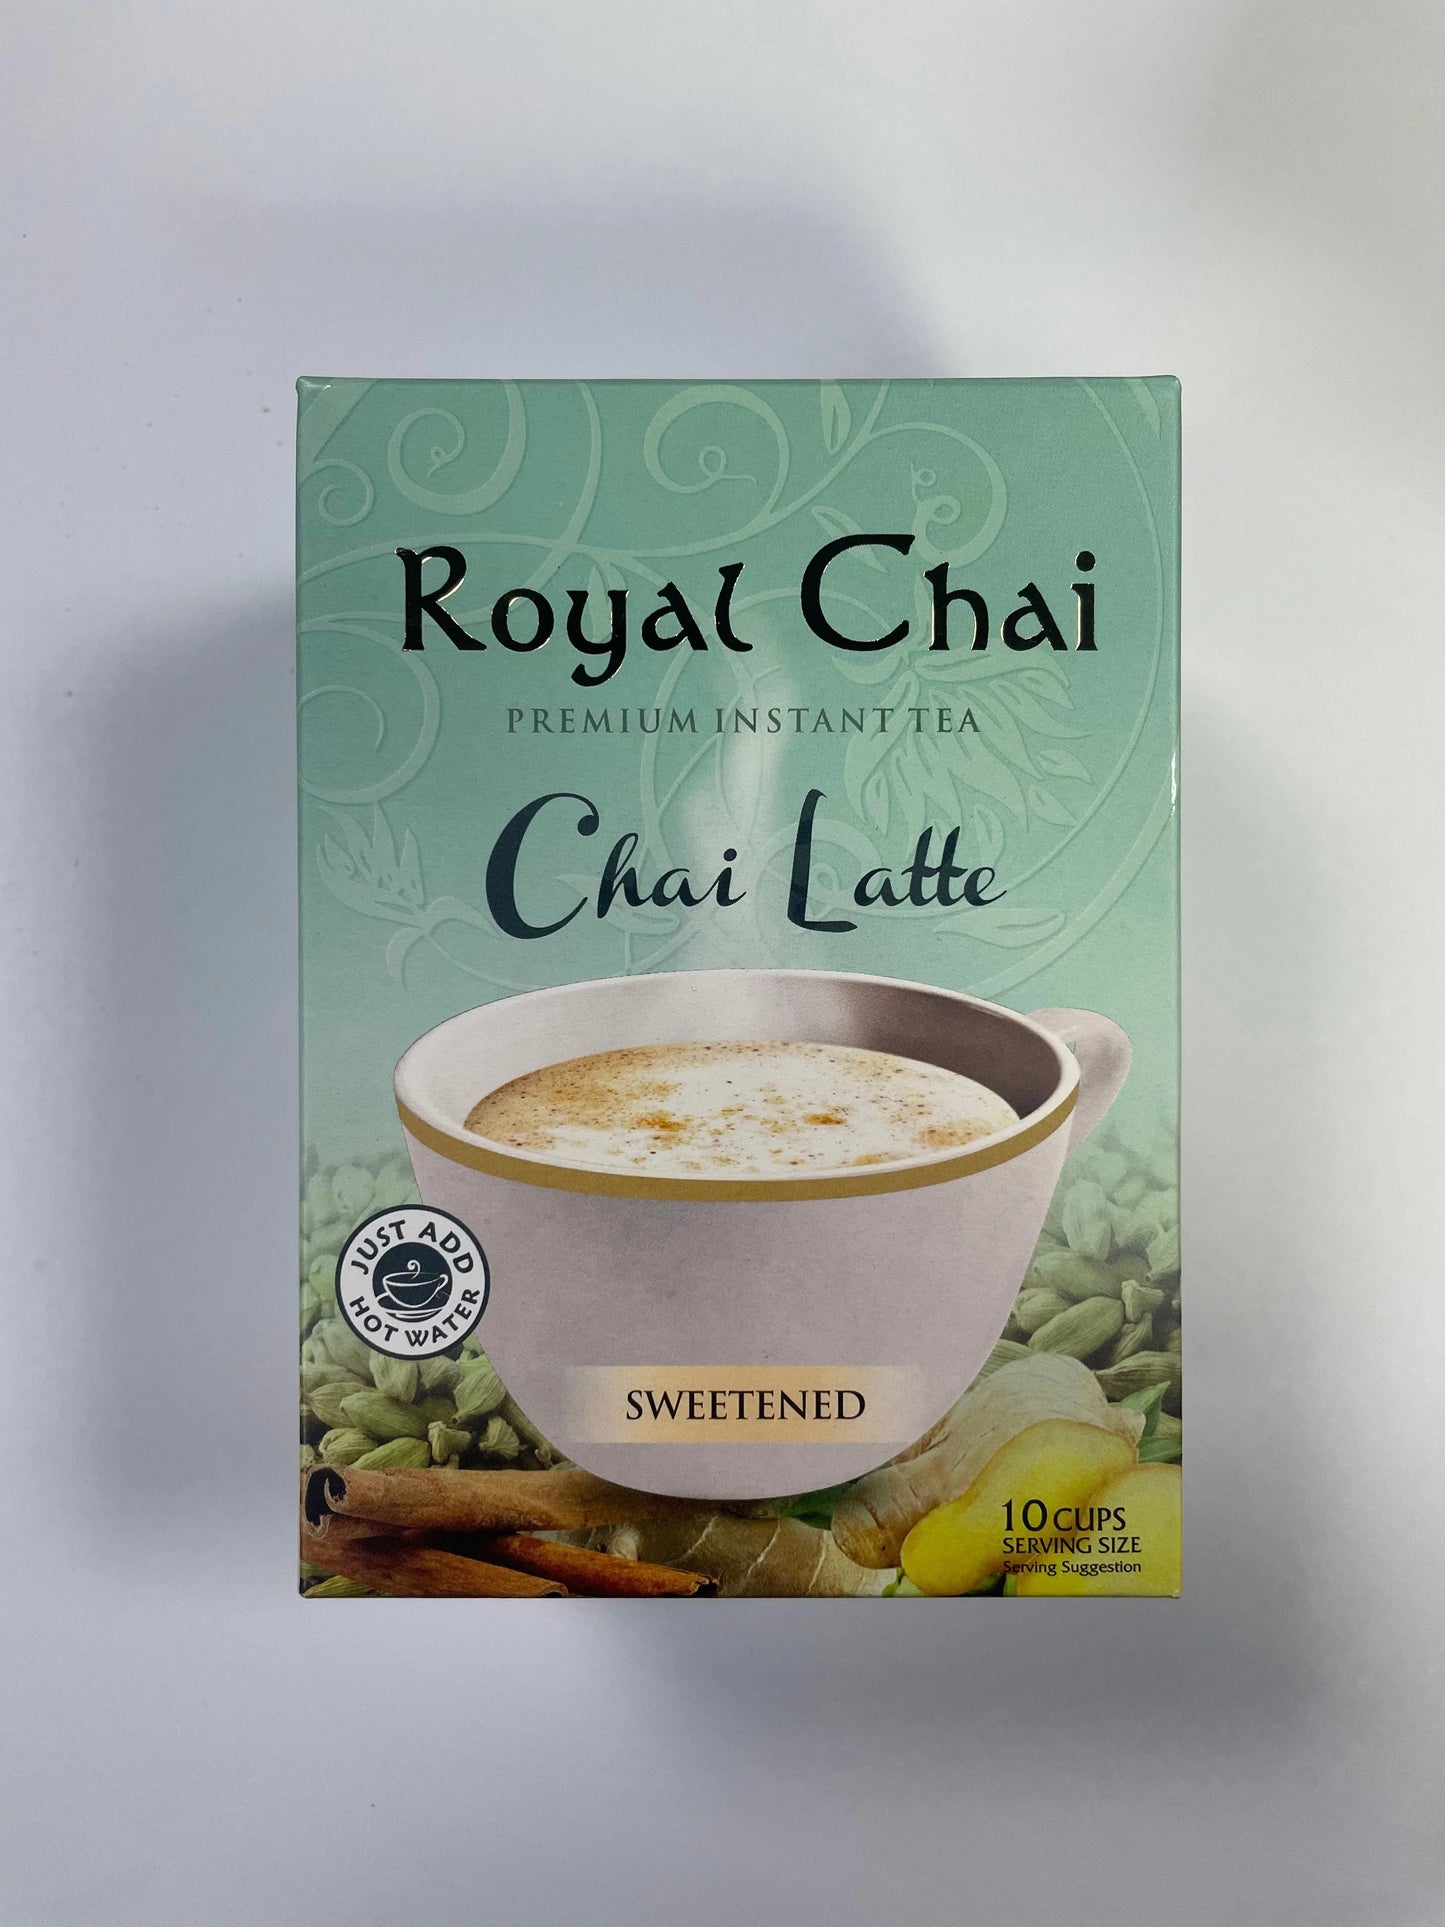 Royal Chai chai latte 200g